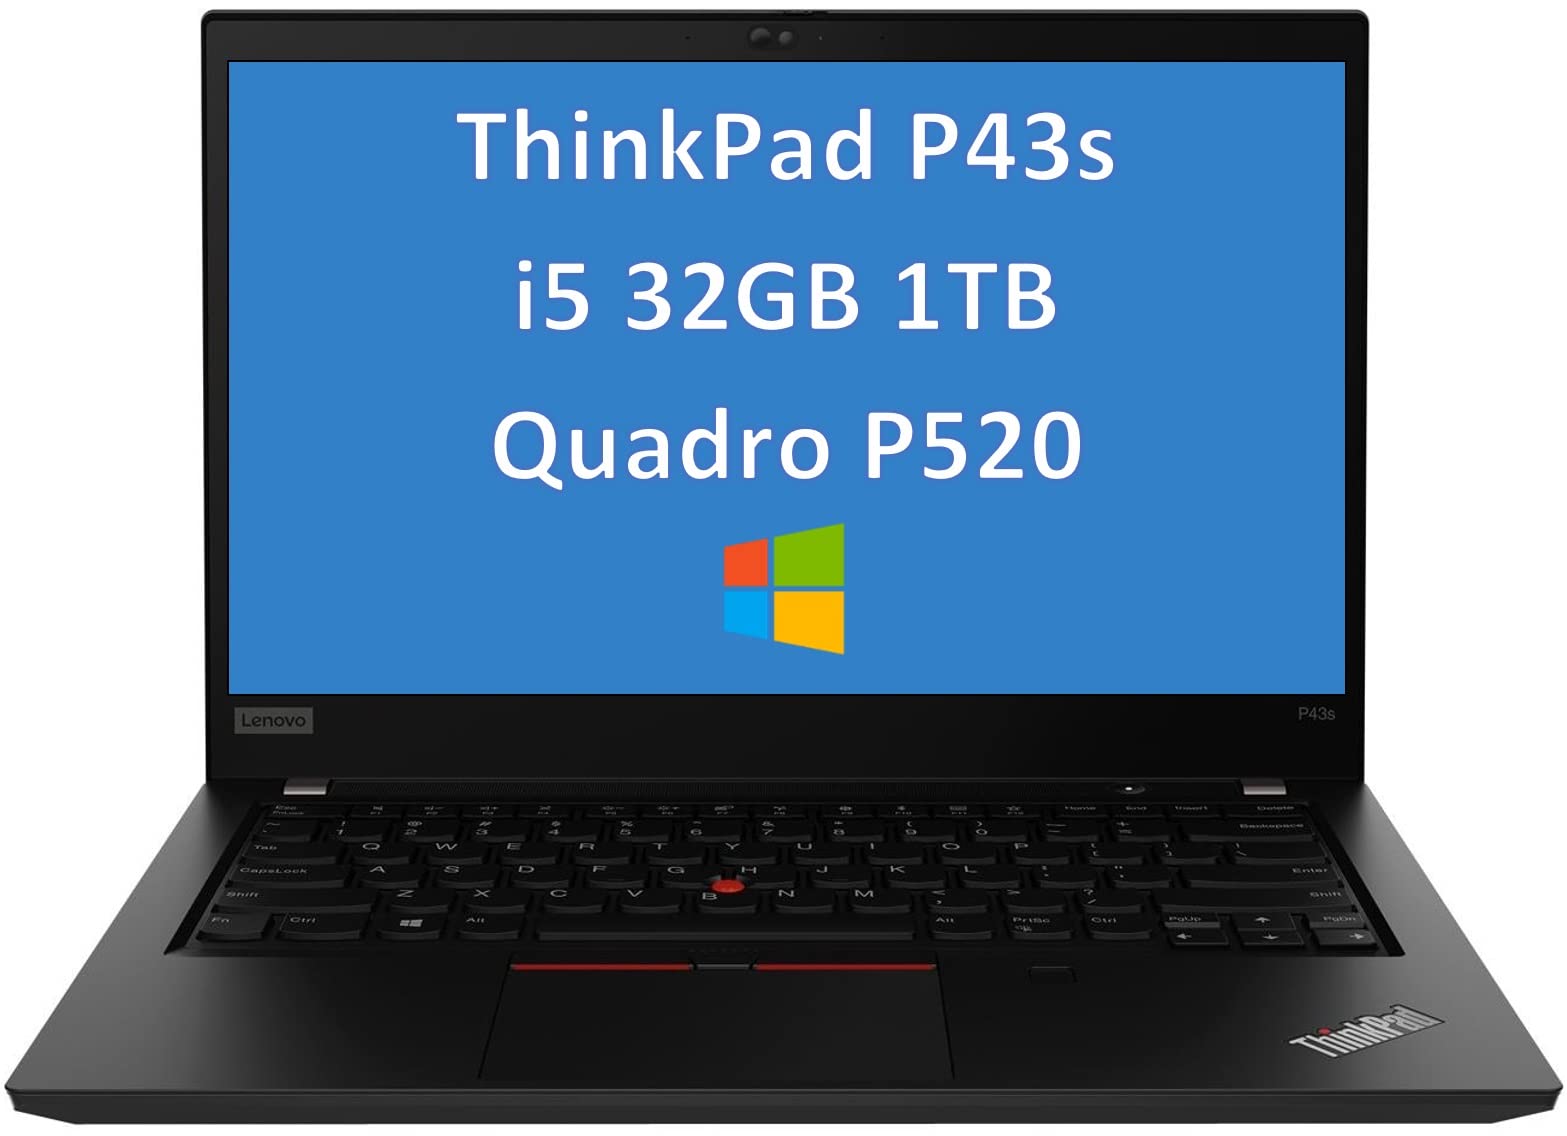 Latest Lenovo ThinkPad P43s 14" FHD (1920x1080) Mobile Workstation Laptop (Intel Quad Core i5-8365U,32GB DDR4 RAM,1TB PCle SSD, Quadro P520 2GB...